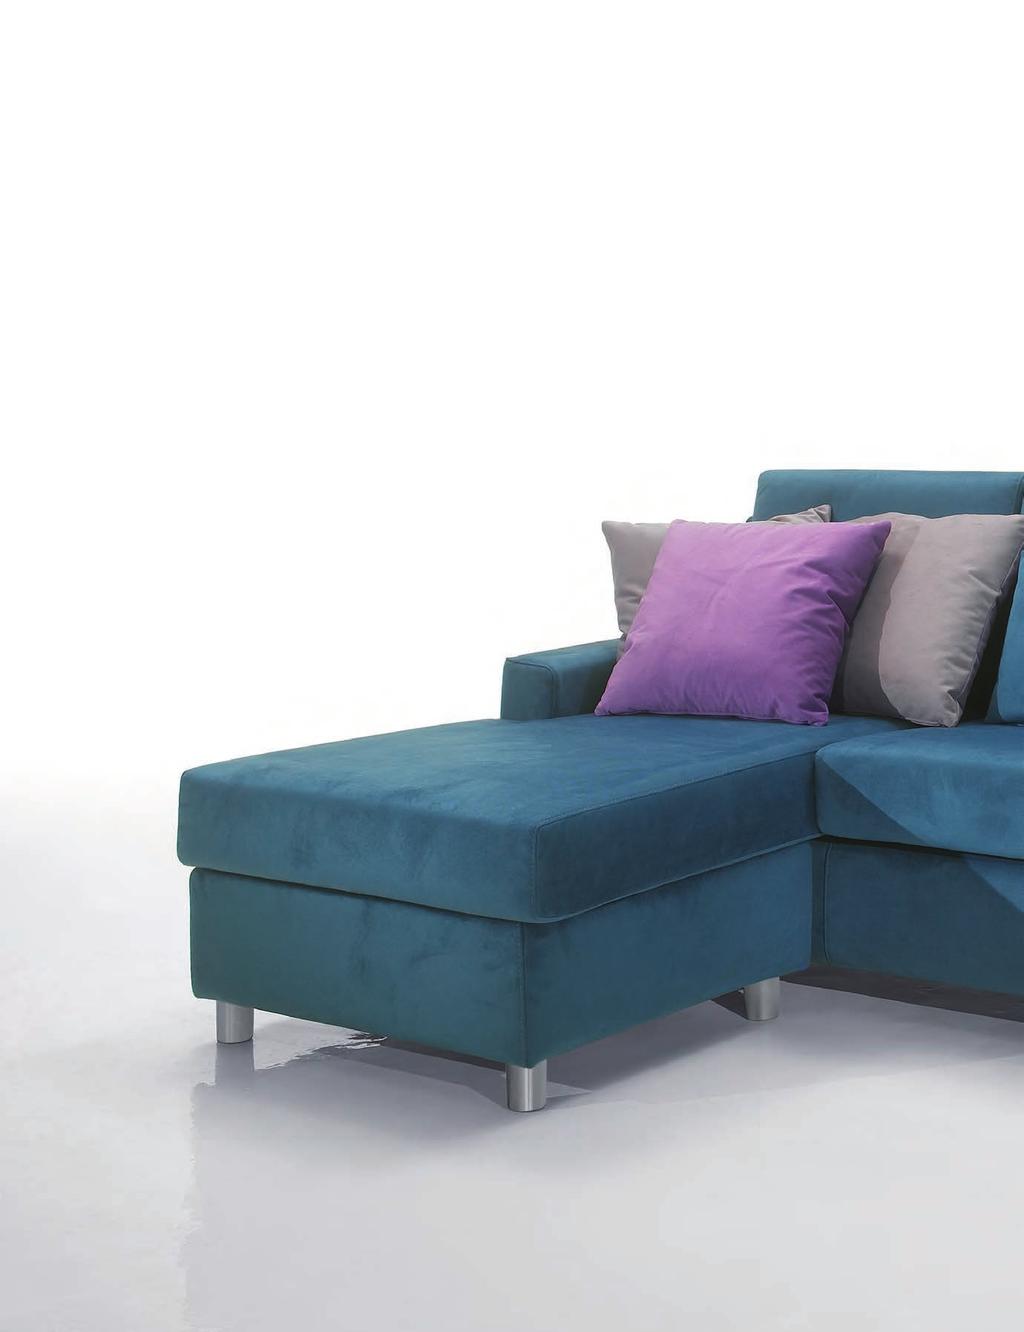 BASIC COLLECTION Composizione: divano maxi con pouff